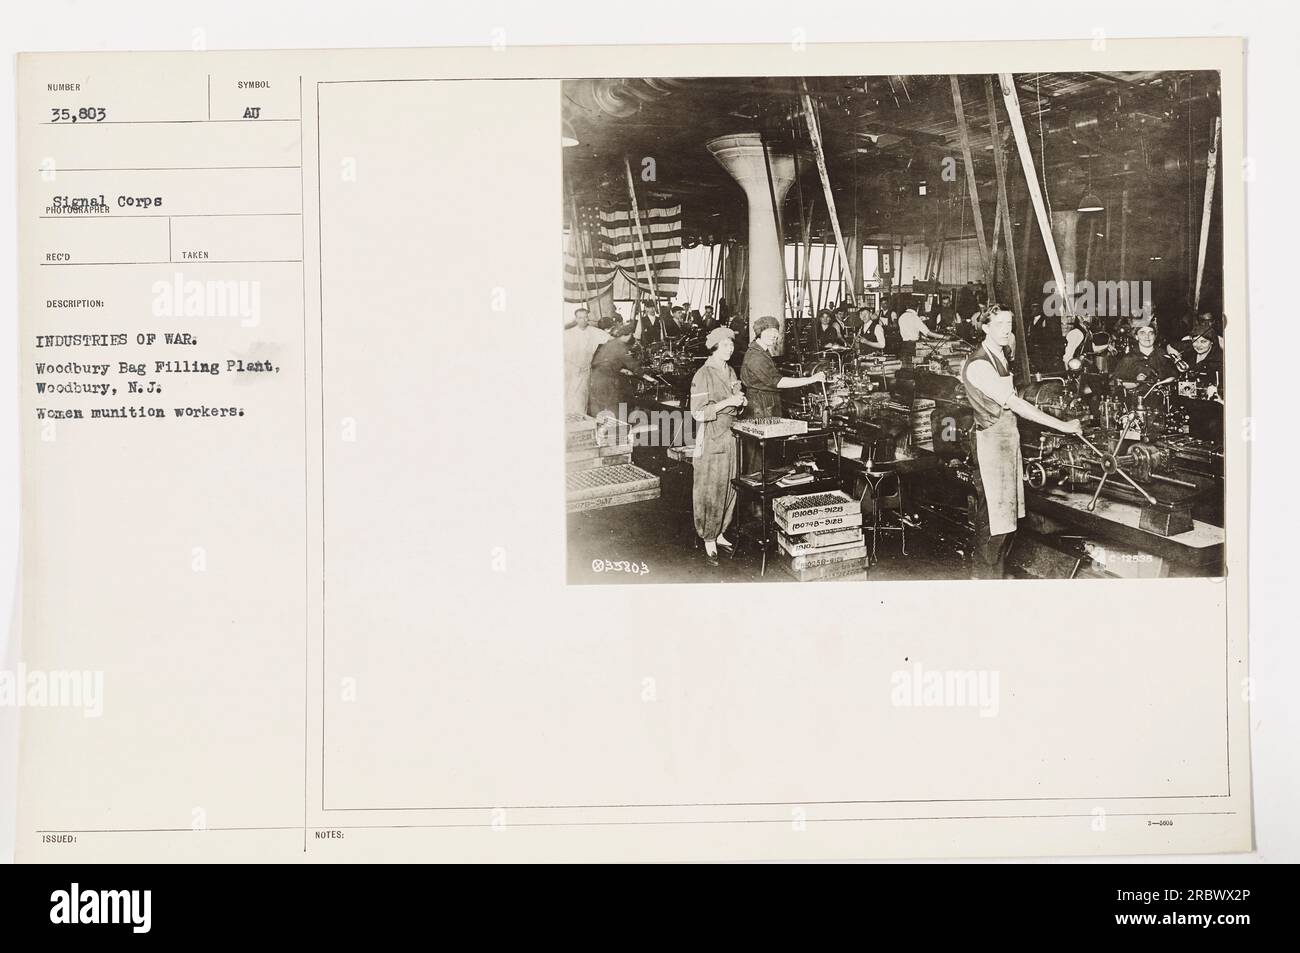 Una fotografia di donne operaie di munizioni al Woodbury Bag Filling Plant di Woodbury, New Jersey. Questa immagine fa parte della collezione Signal Corps BEC'D ed è stata scattata durante la prima guerra mondiale. Le donne sono viste lavorare diligentemente, contribuendo agli sforzi bellici. Foto Stock